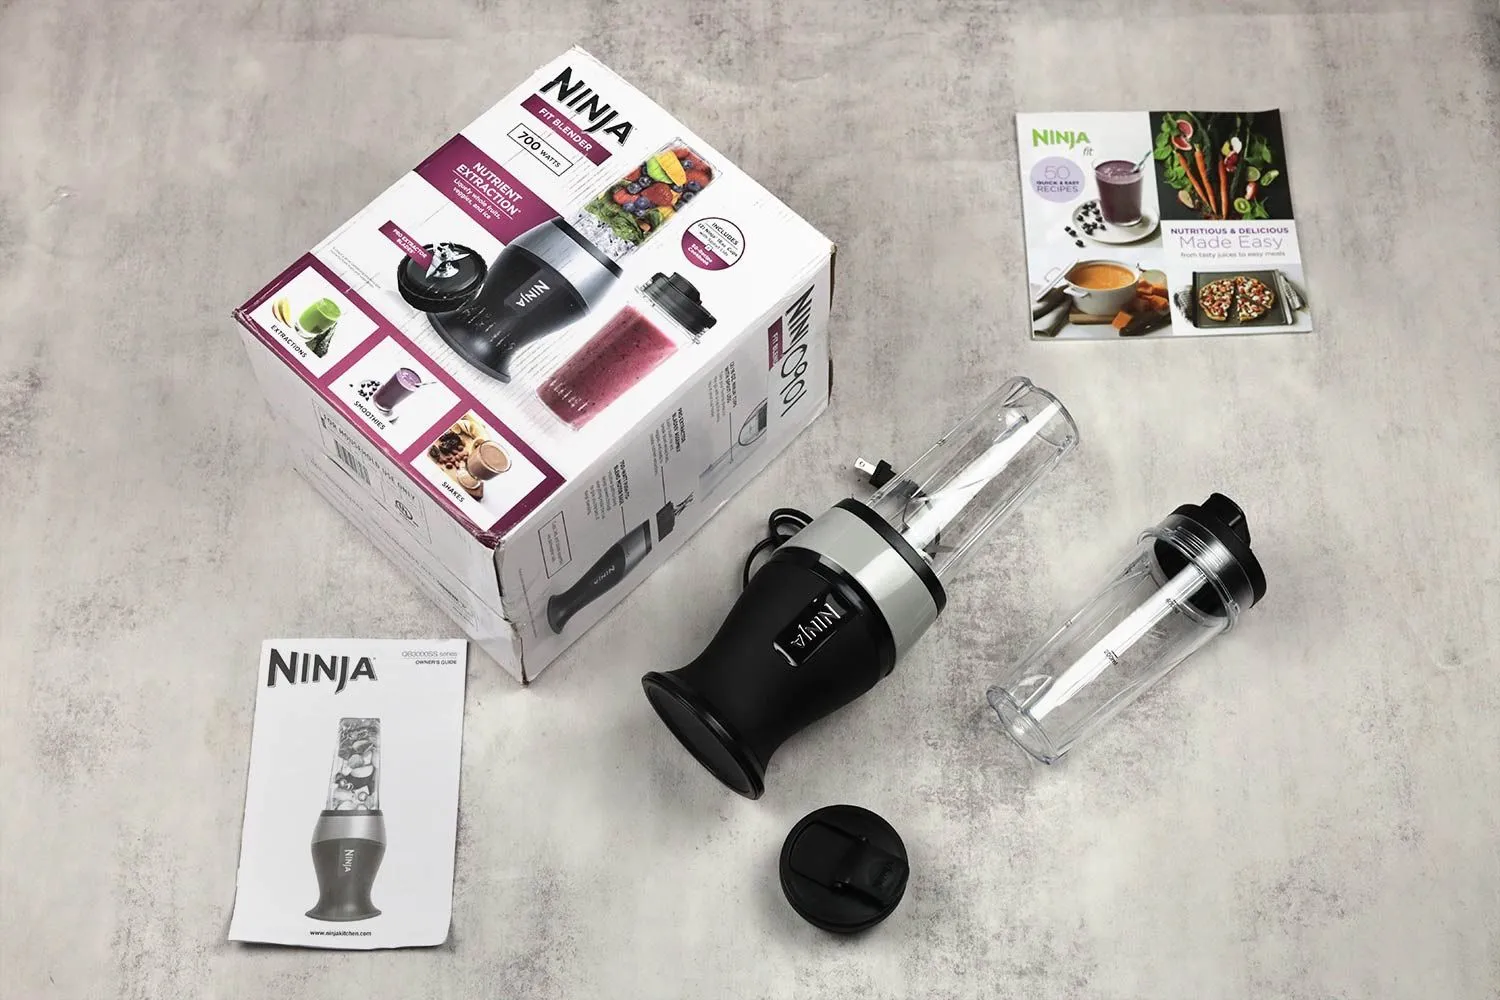 Ninja Fit Blender. 700 watts.